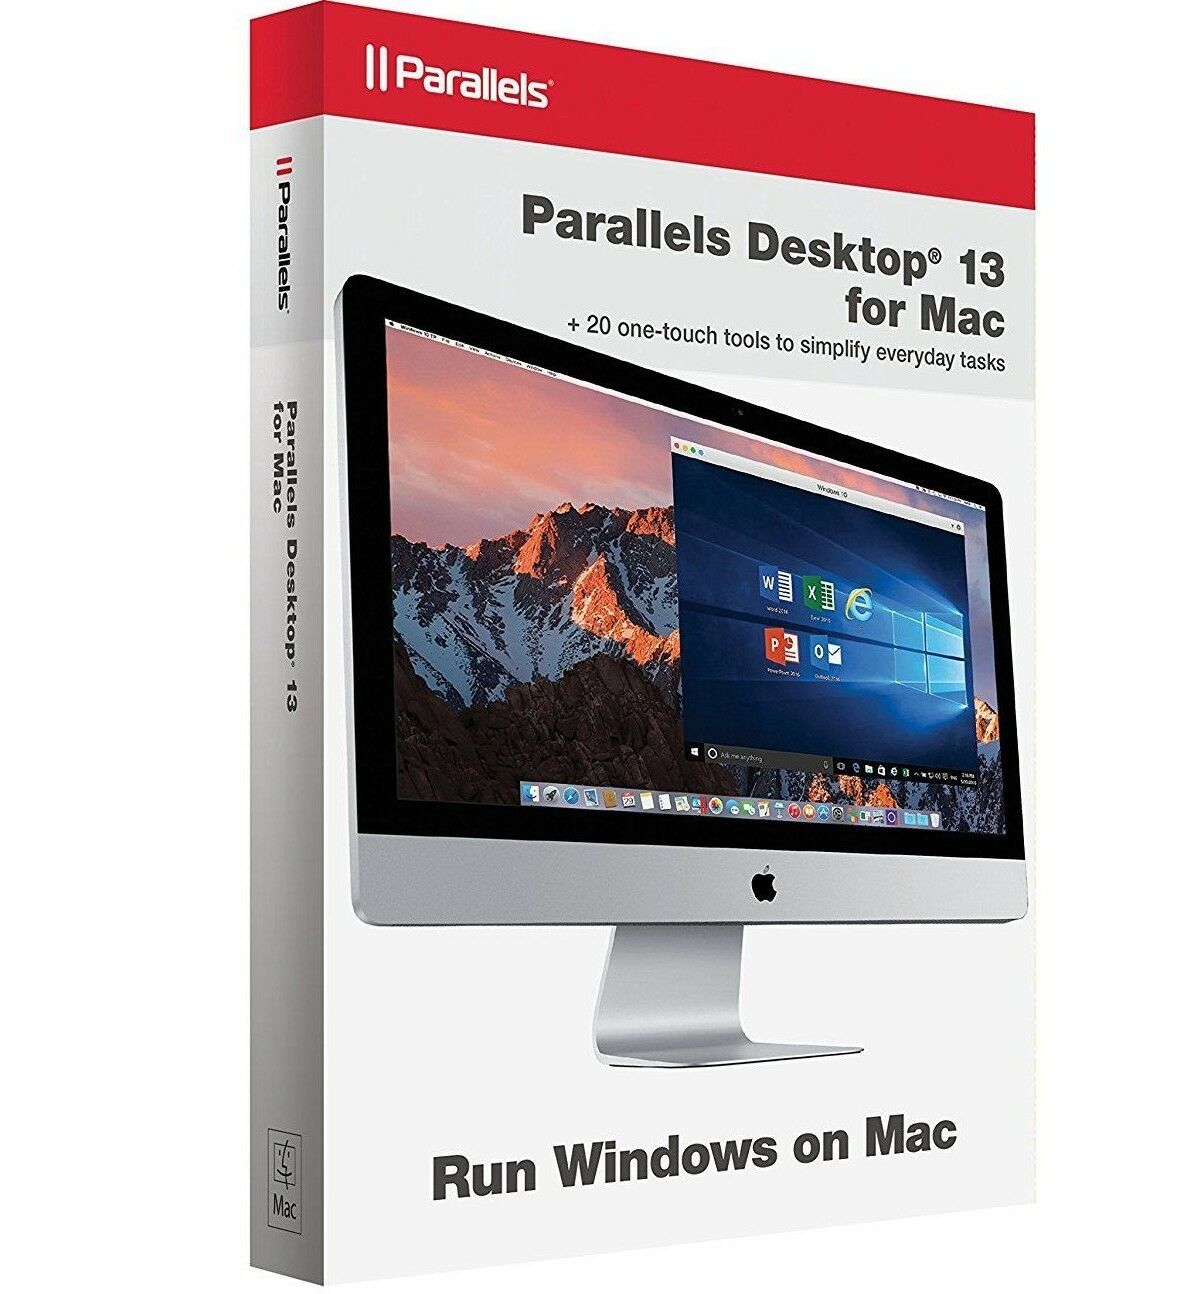 installer parallels desktop 13